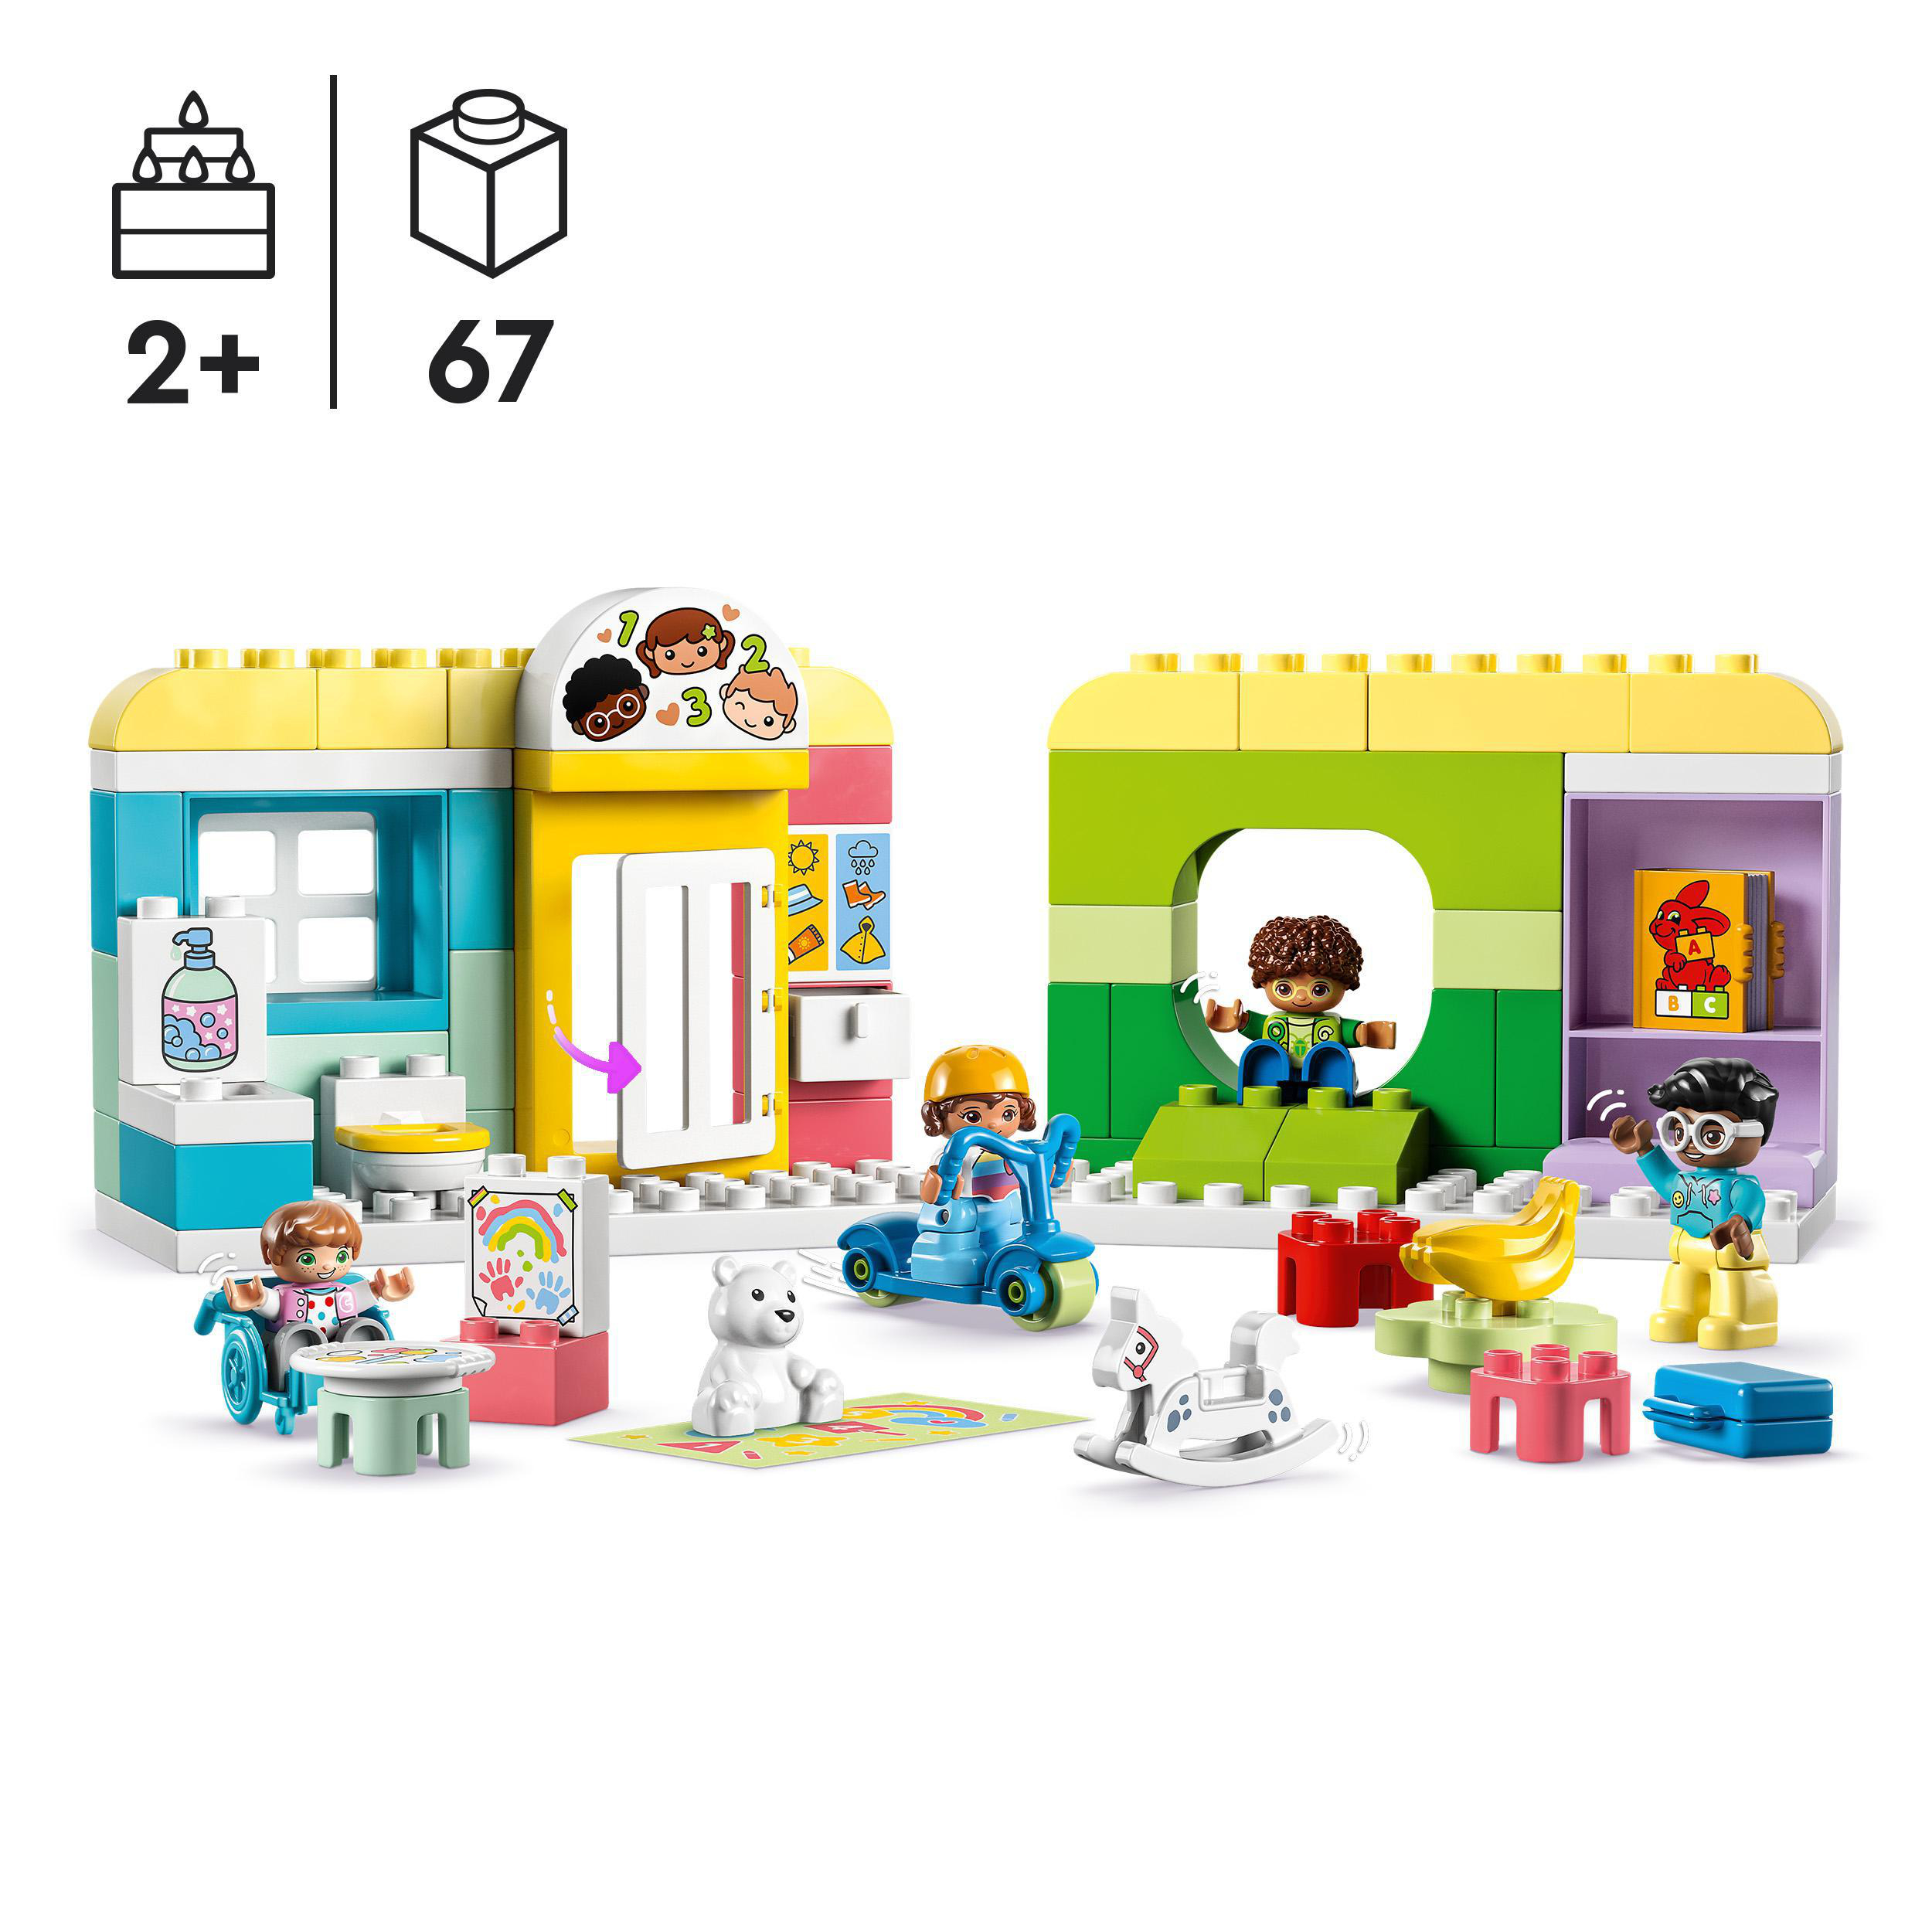 der in Kita Spielspaß 10992 DUPLO Mehrfarbig LEGO Bausatz,